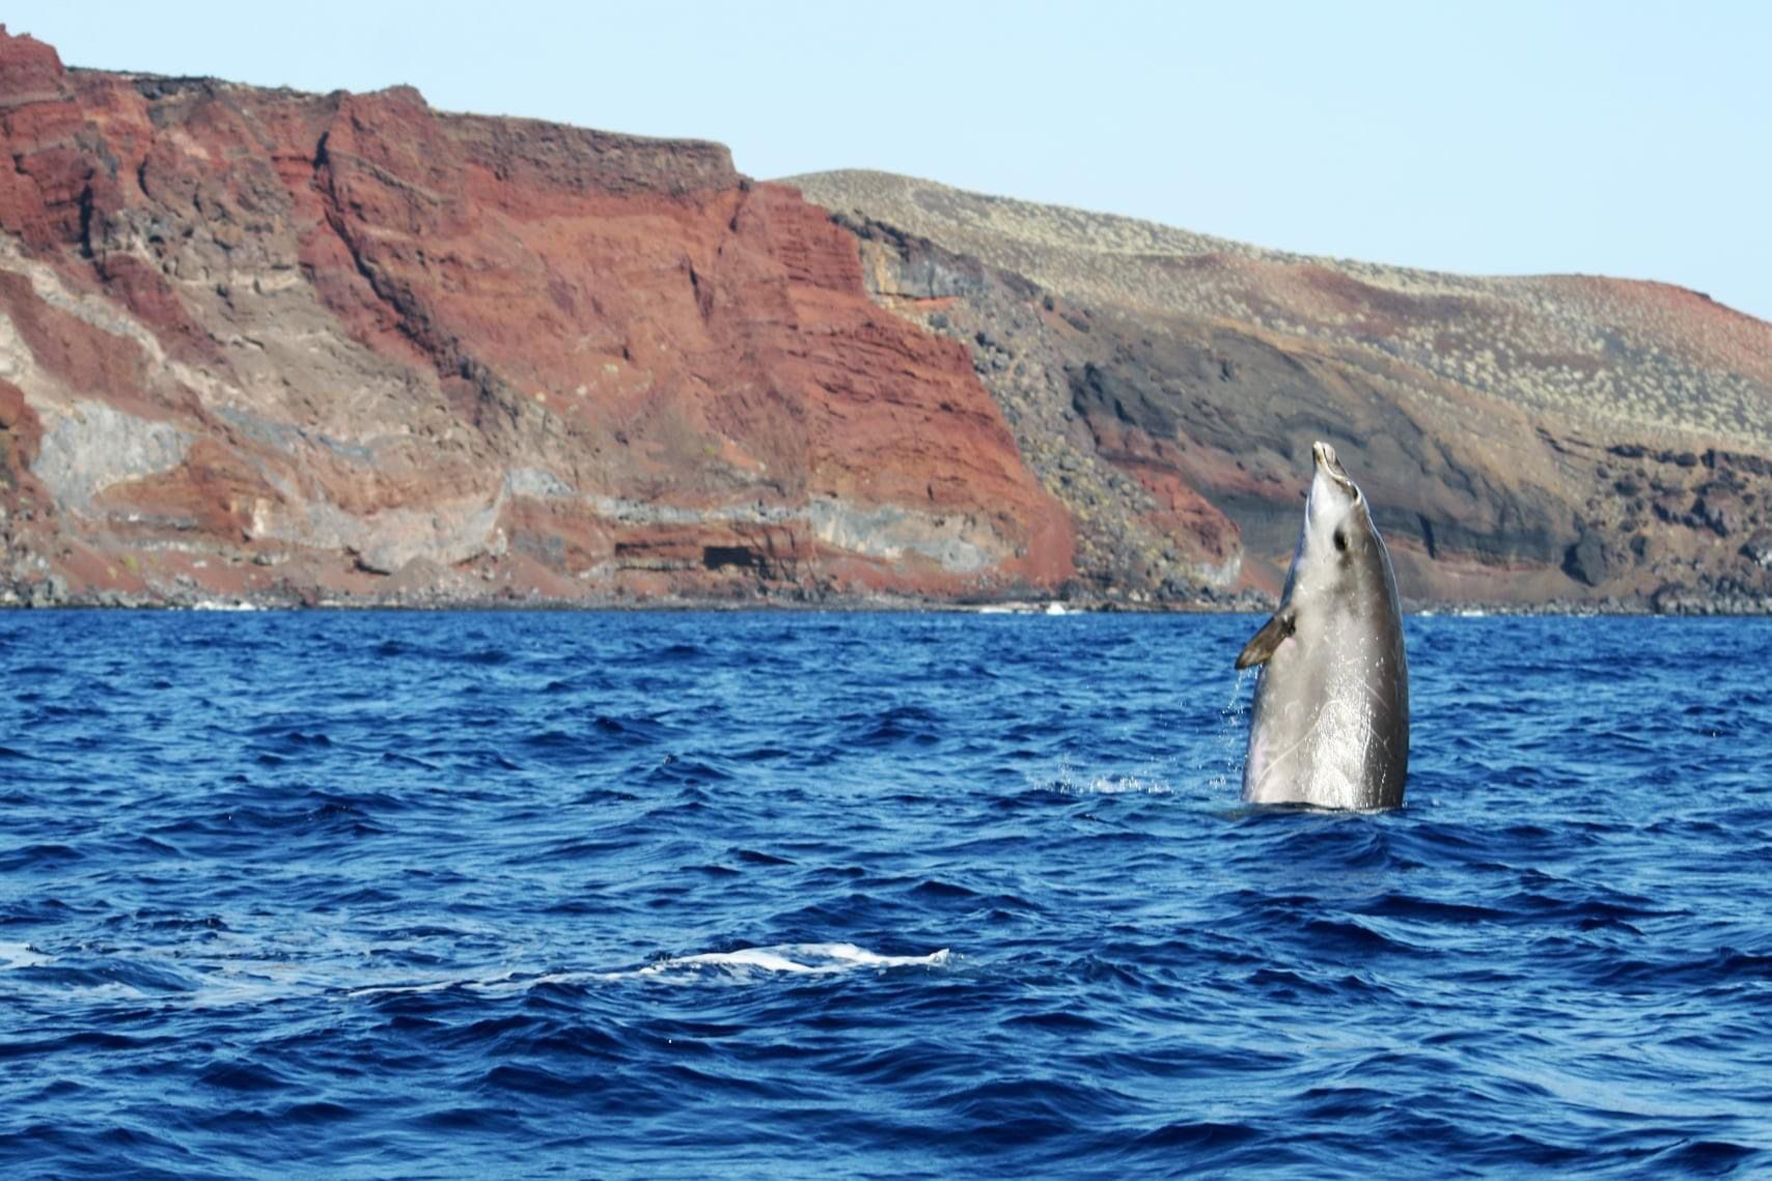 El análisis genético de un ejemplar de zifio varado en El Hierro saca a la luz el descubrimiento de una nueva especie de estos cetáceos